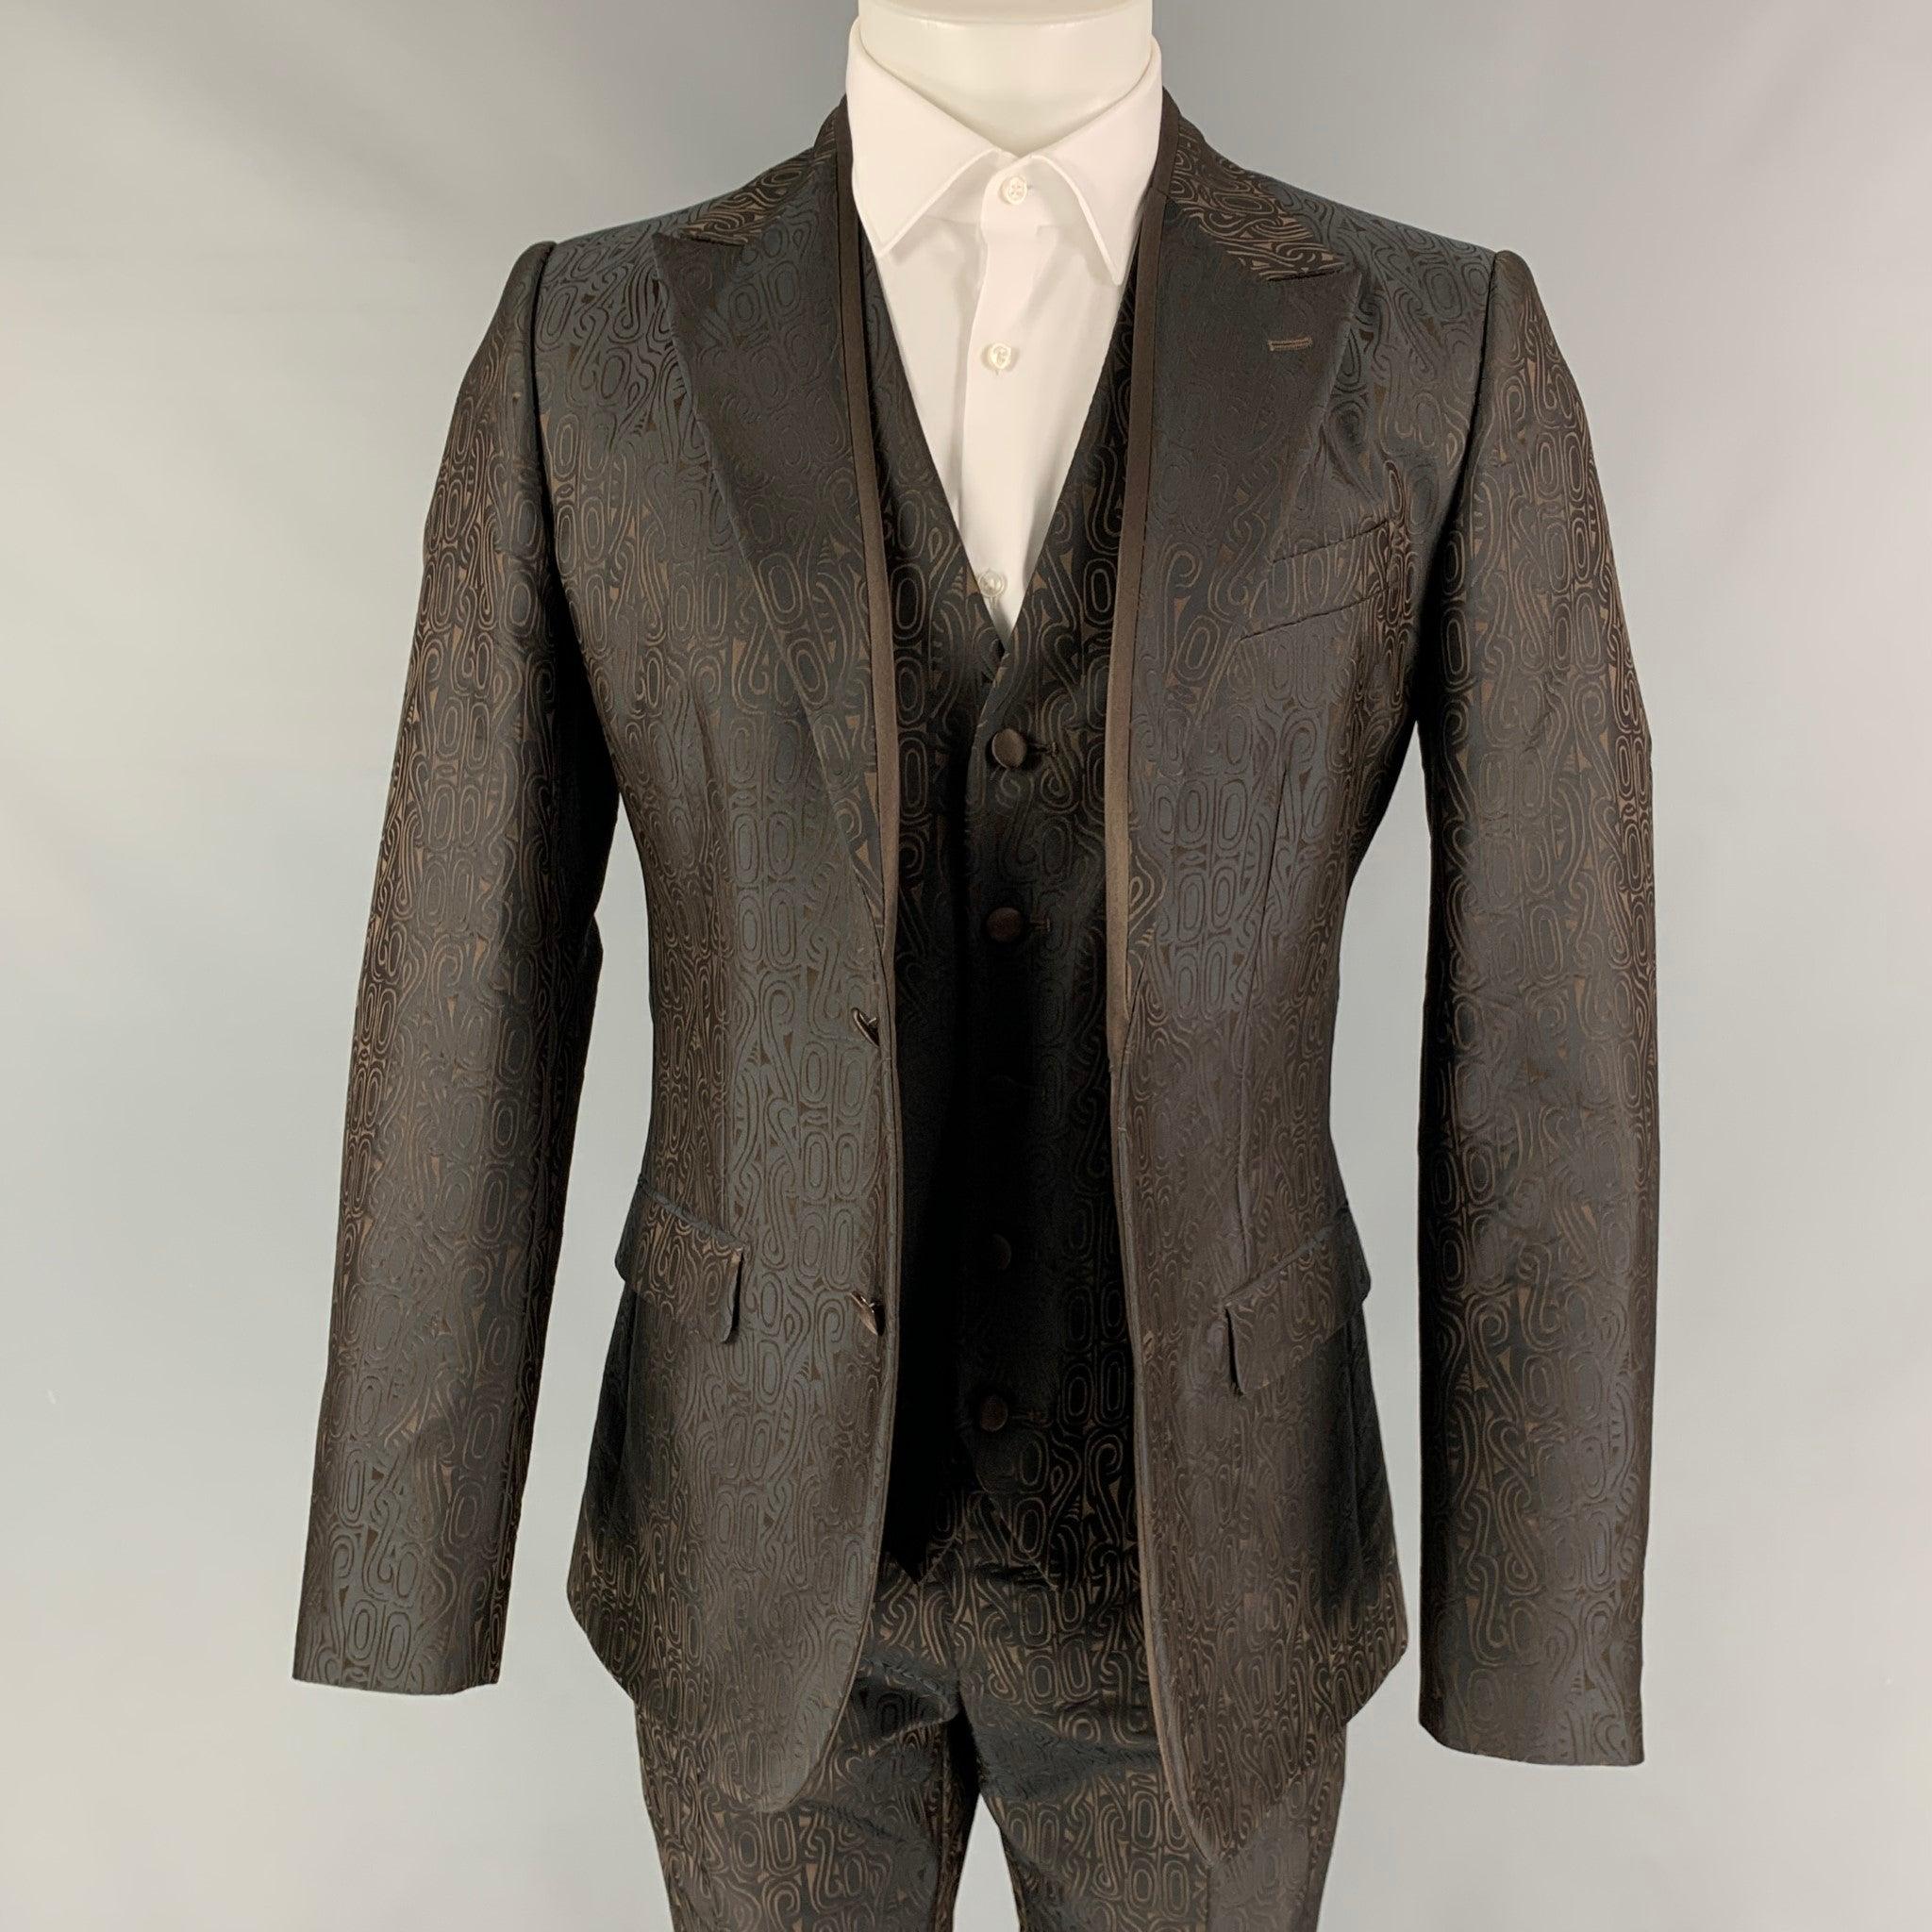 DOLCE & GABBANA 3 pièces
Le costume est en polyester/soie géométrique marron avec une doublure complète et comprend un manteau de sport à un seul boutonnage avec un revers en pointe et un pantalon assorti à devant plat. La taille et la longueur des